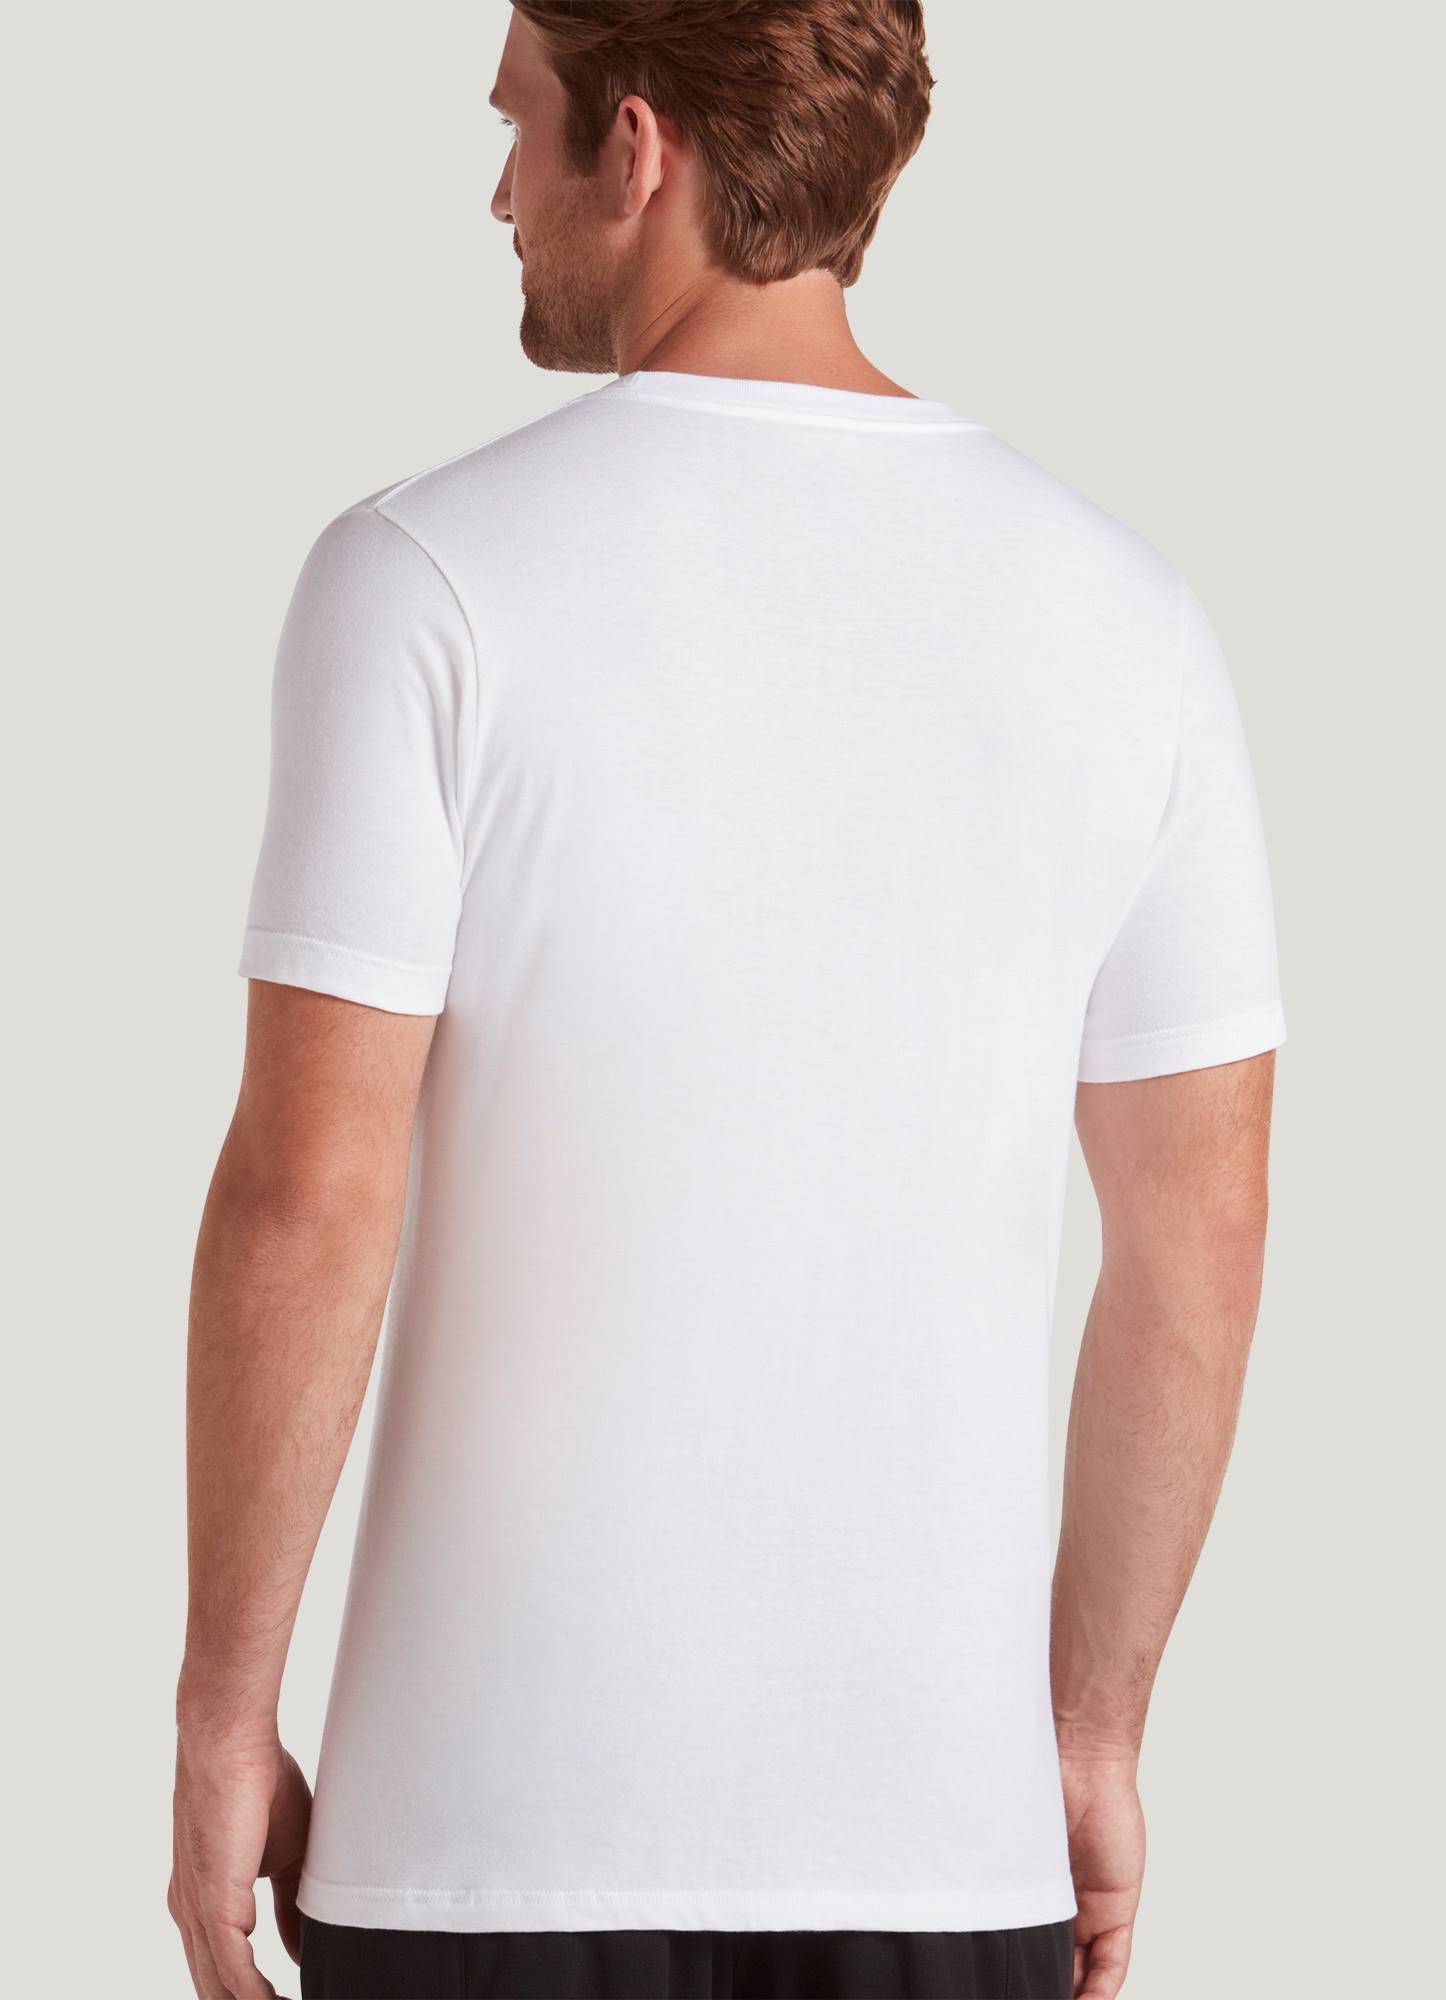 Cotton T-Shirt Bra in White from Joe Fresh